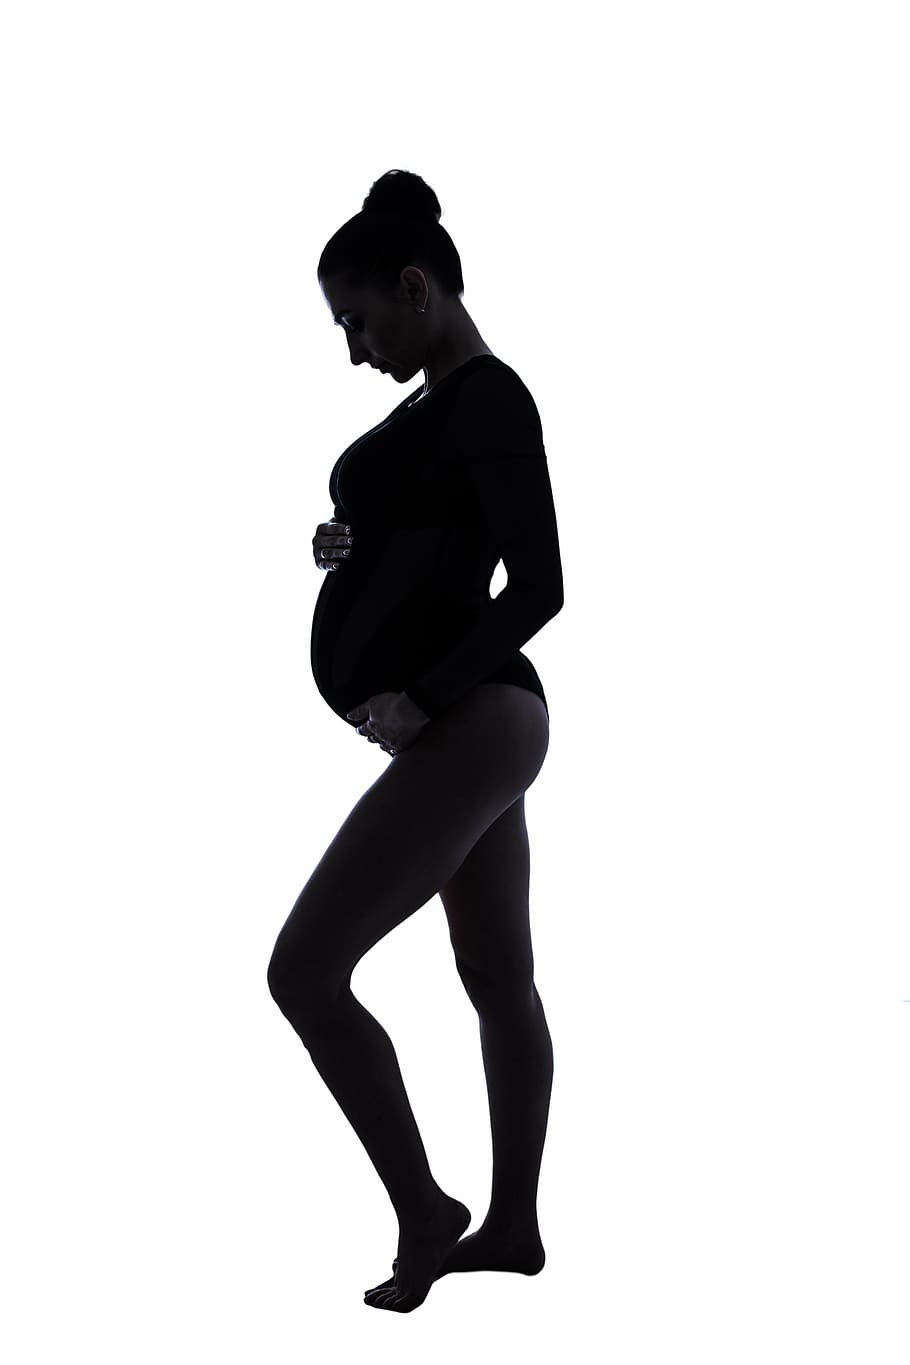 embarazada, mujer, tenencia, barriga, embarazo, silueta, familia, fondo blanco, foto de estudio, una persona